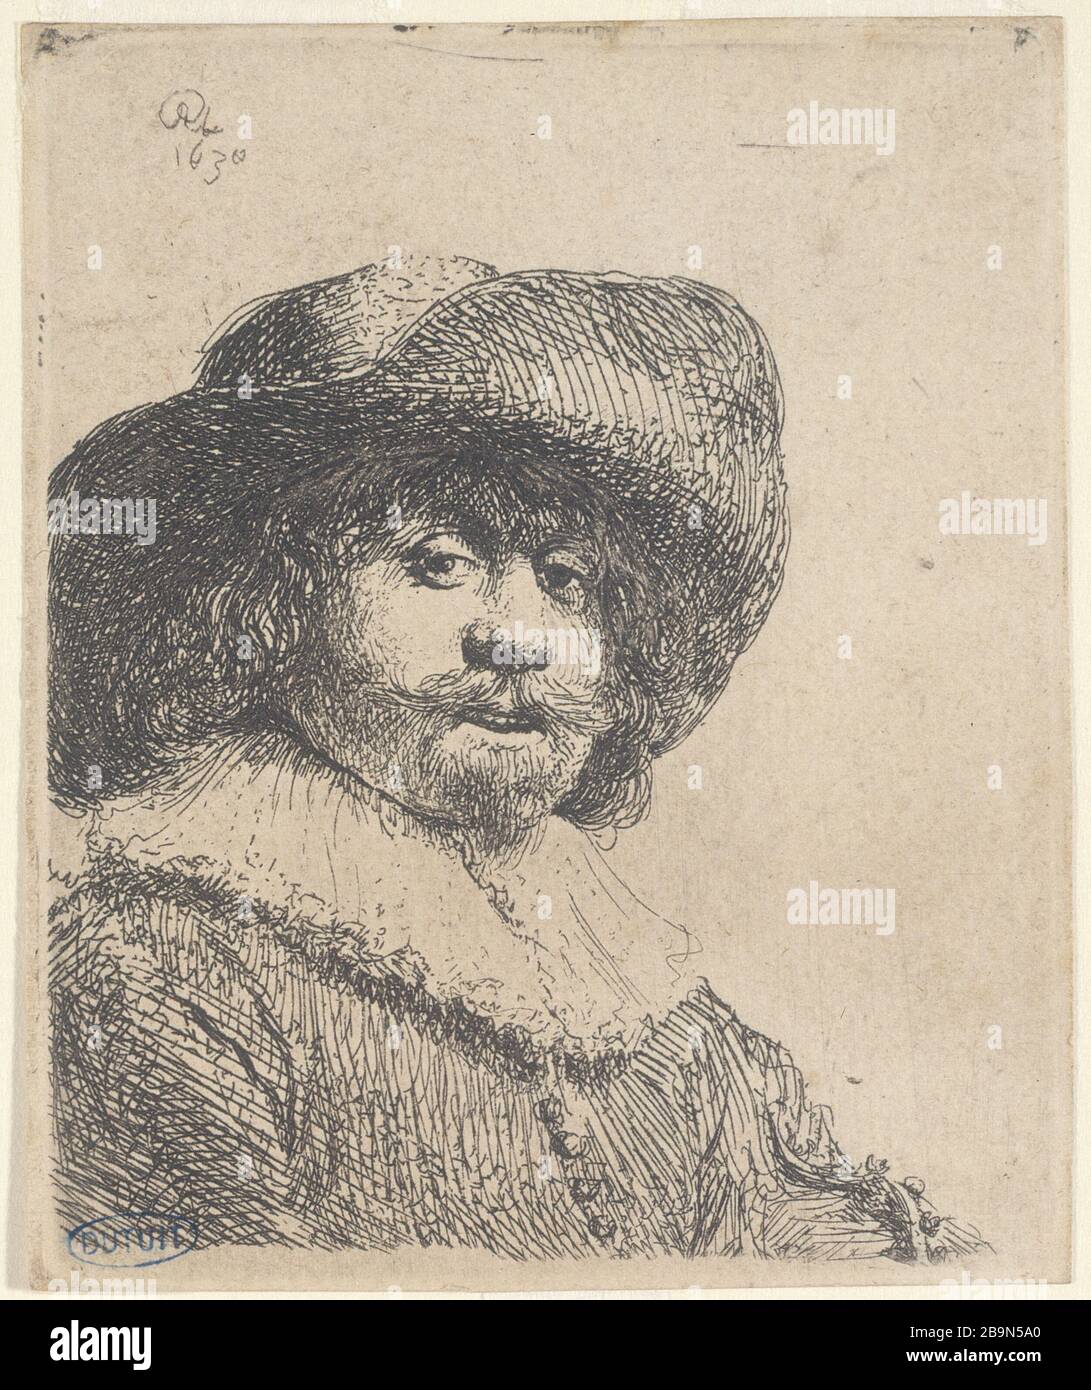 MAN WITH A HAT IN GRAND BOARD Harmensz van Rijn Rembrandt (1606-1669). 'Homme avec un chapeau à grand bord' (B 311, état unique), 1638. Musée des Beaux-Arts de la Ville de Paris, Petit Palais. Stock Photo